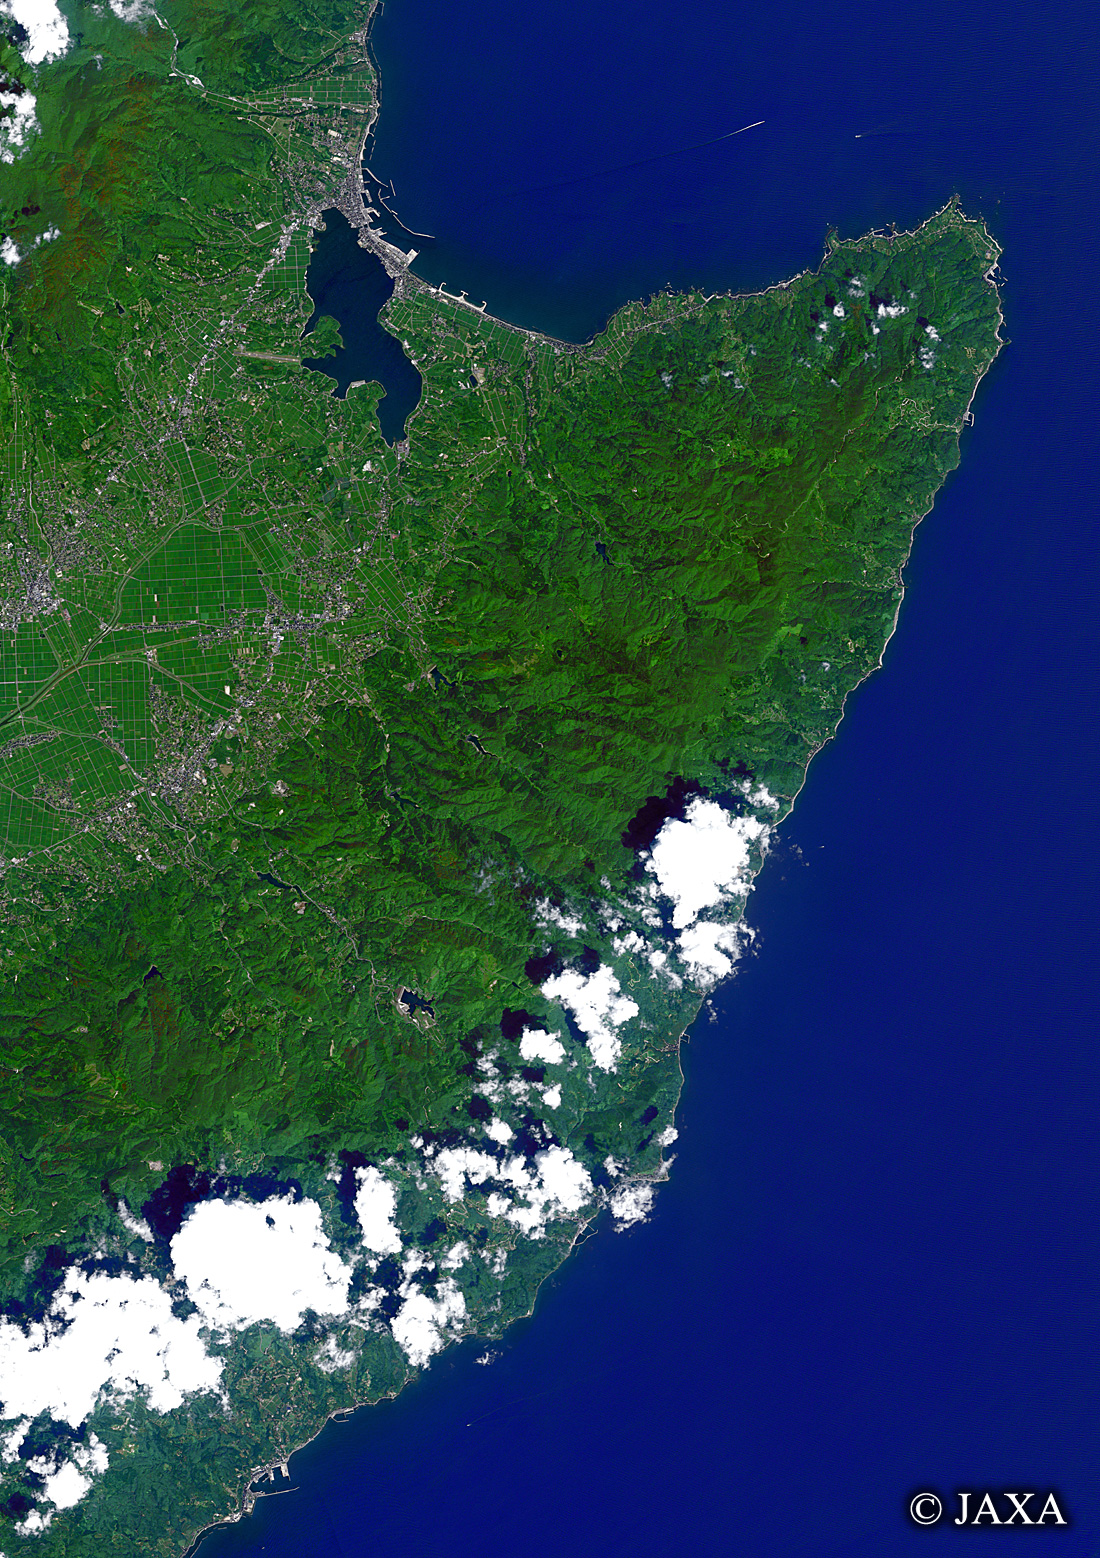 だいちから見た日本の都市 佐渡島東部周辺:衛星画像